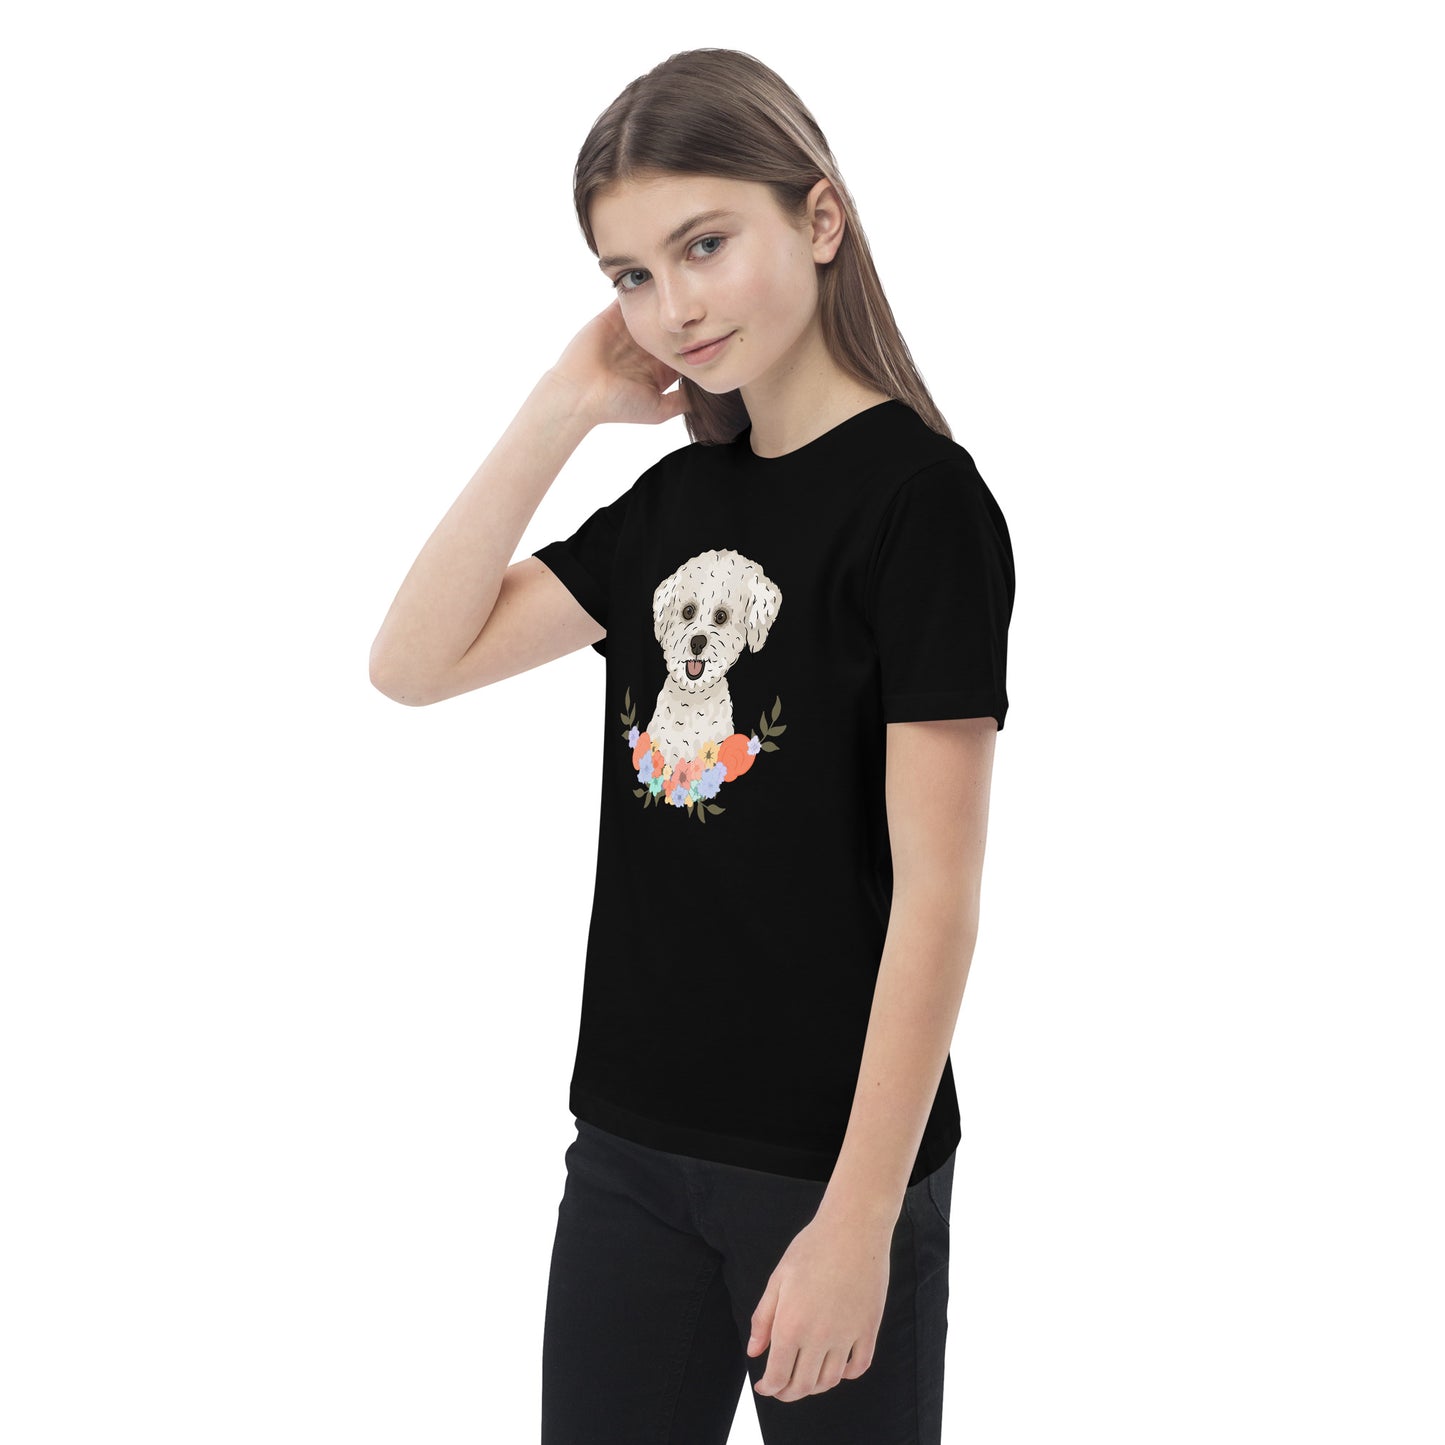 Bichon Frise T Shirt | Pet T Shirt For Girls